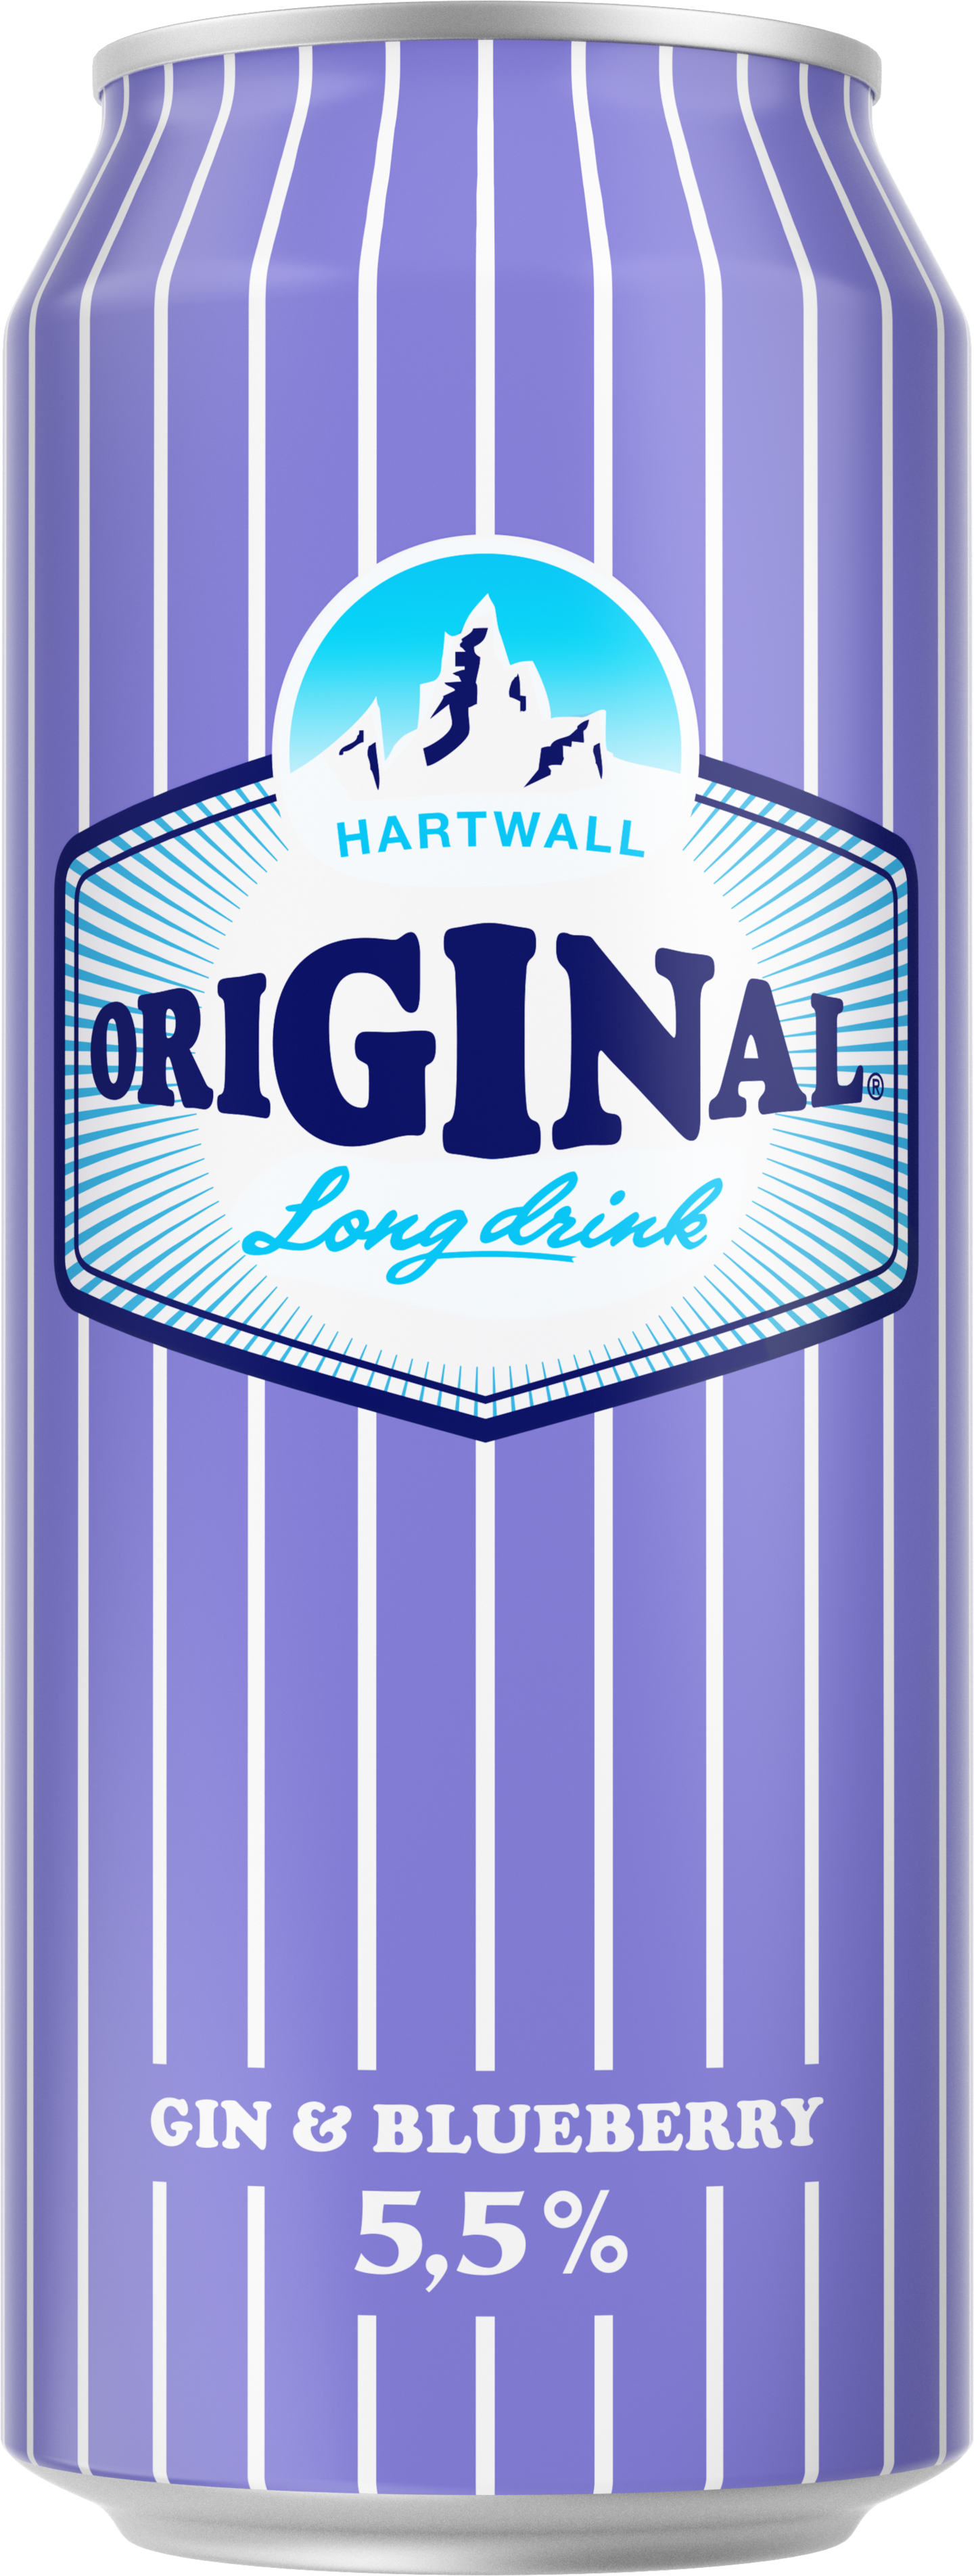 Hartwall Original Long Drink Blueberry 5,5% 0,5l